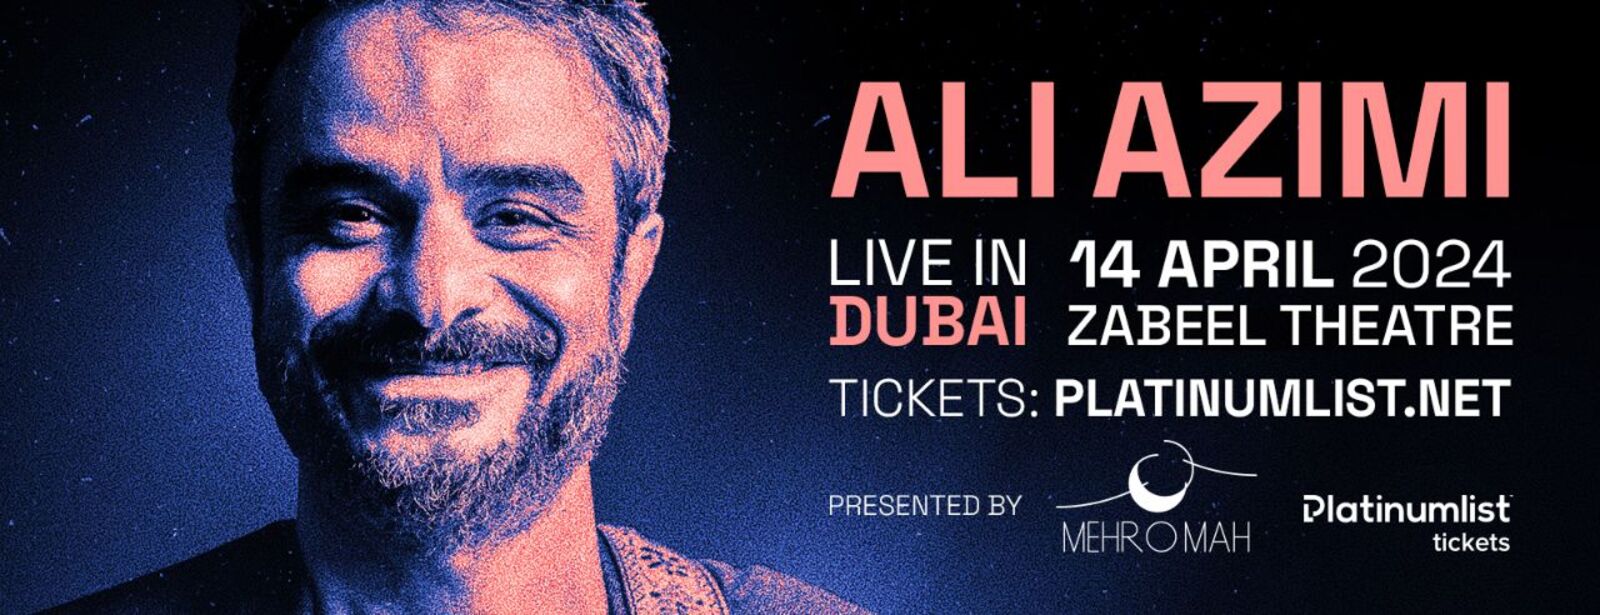 Ali Azimi Concert at Zabeel Theatre, Dubai - Coming Soon in UAE